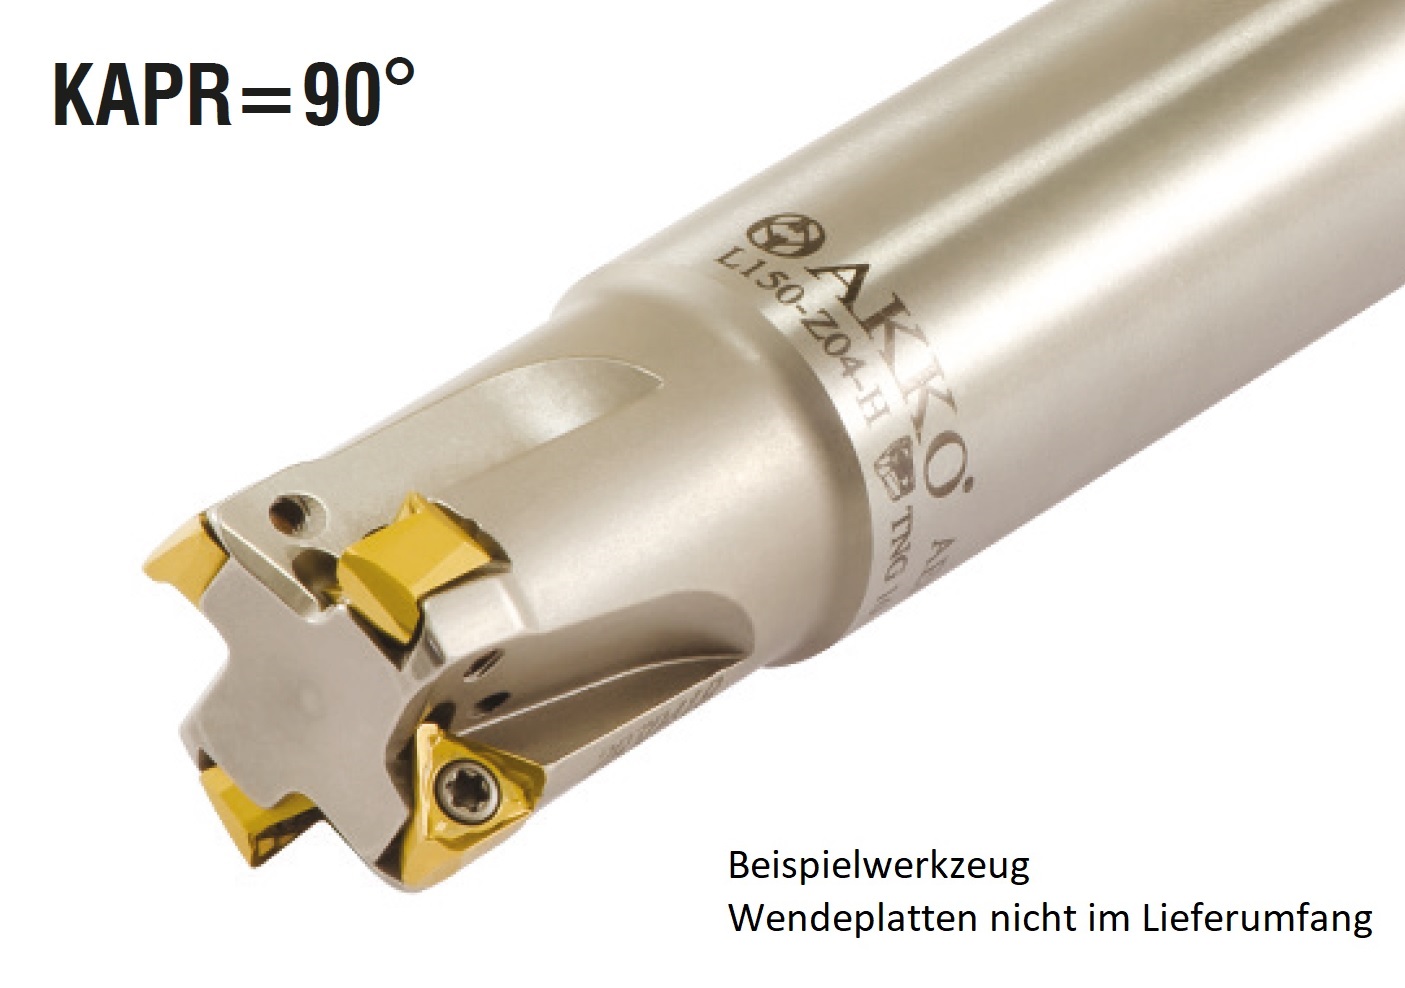 AKKO-Wendeplatten-Schaftfräser ø 20 mm, 90°, kompatibel mit Pramet TNGX 1004..
Schaft-ø 20, mit Innenkühlung, Z=3